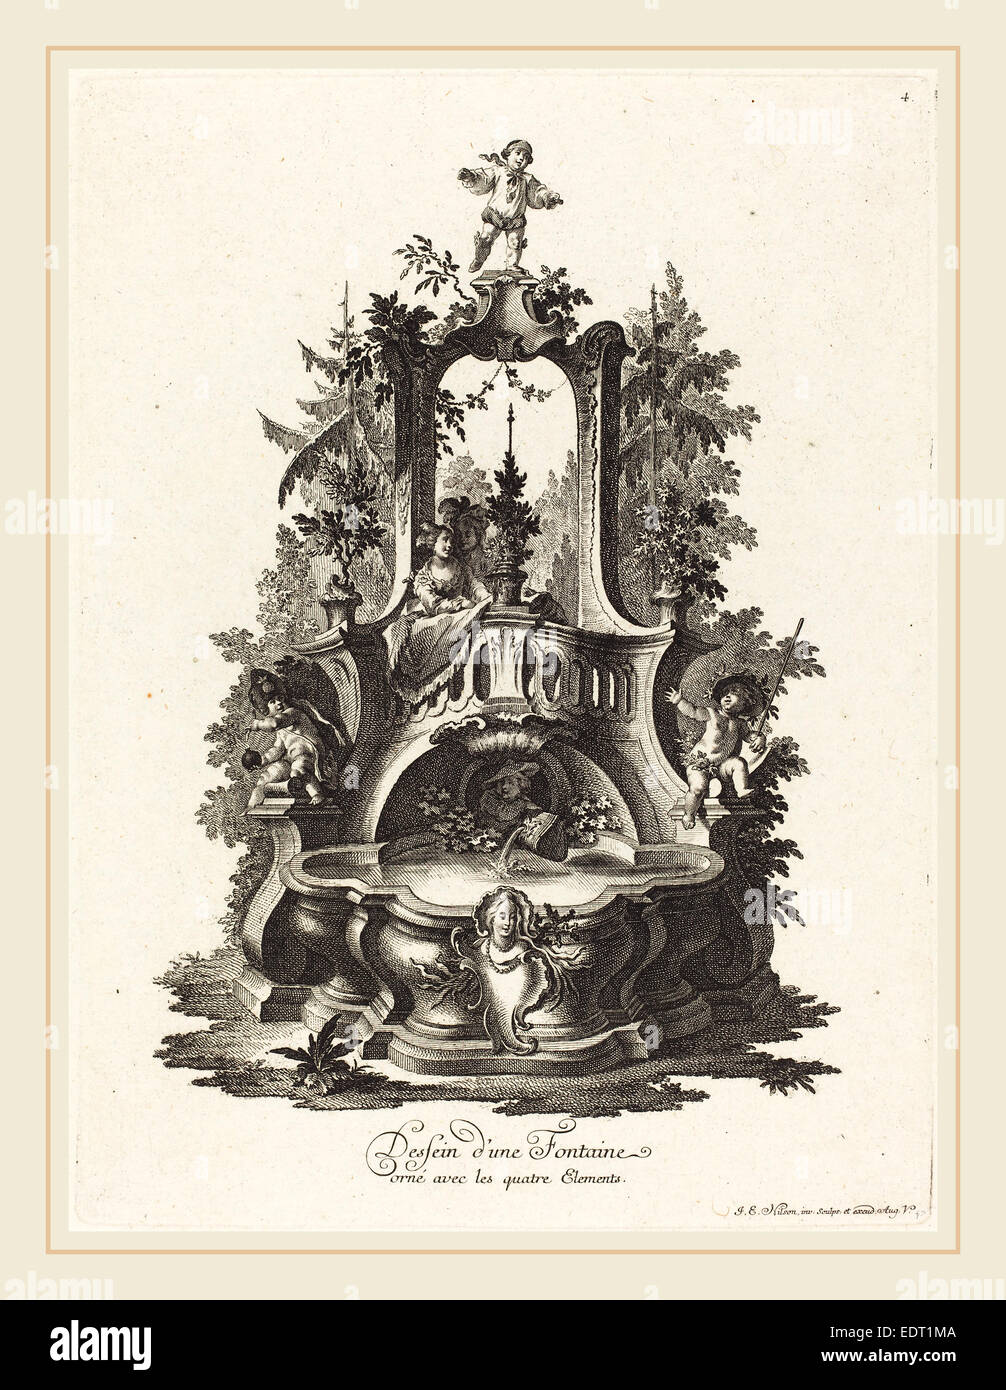 Johann Esaias Nilson (German, 1721-1788), Dessein d'une Fontaine orné avec les quatre Elements. Design for a Fountain Decorated Stock Photo